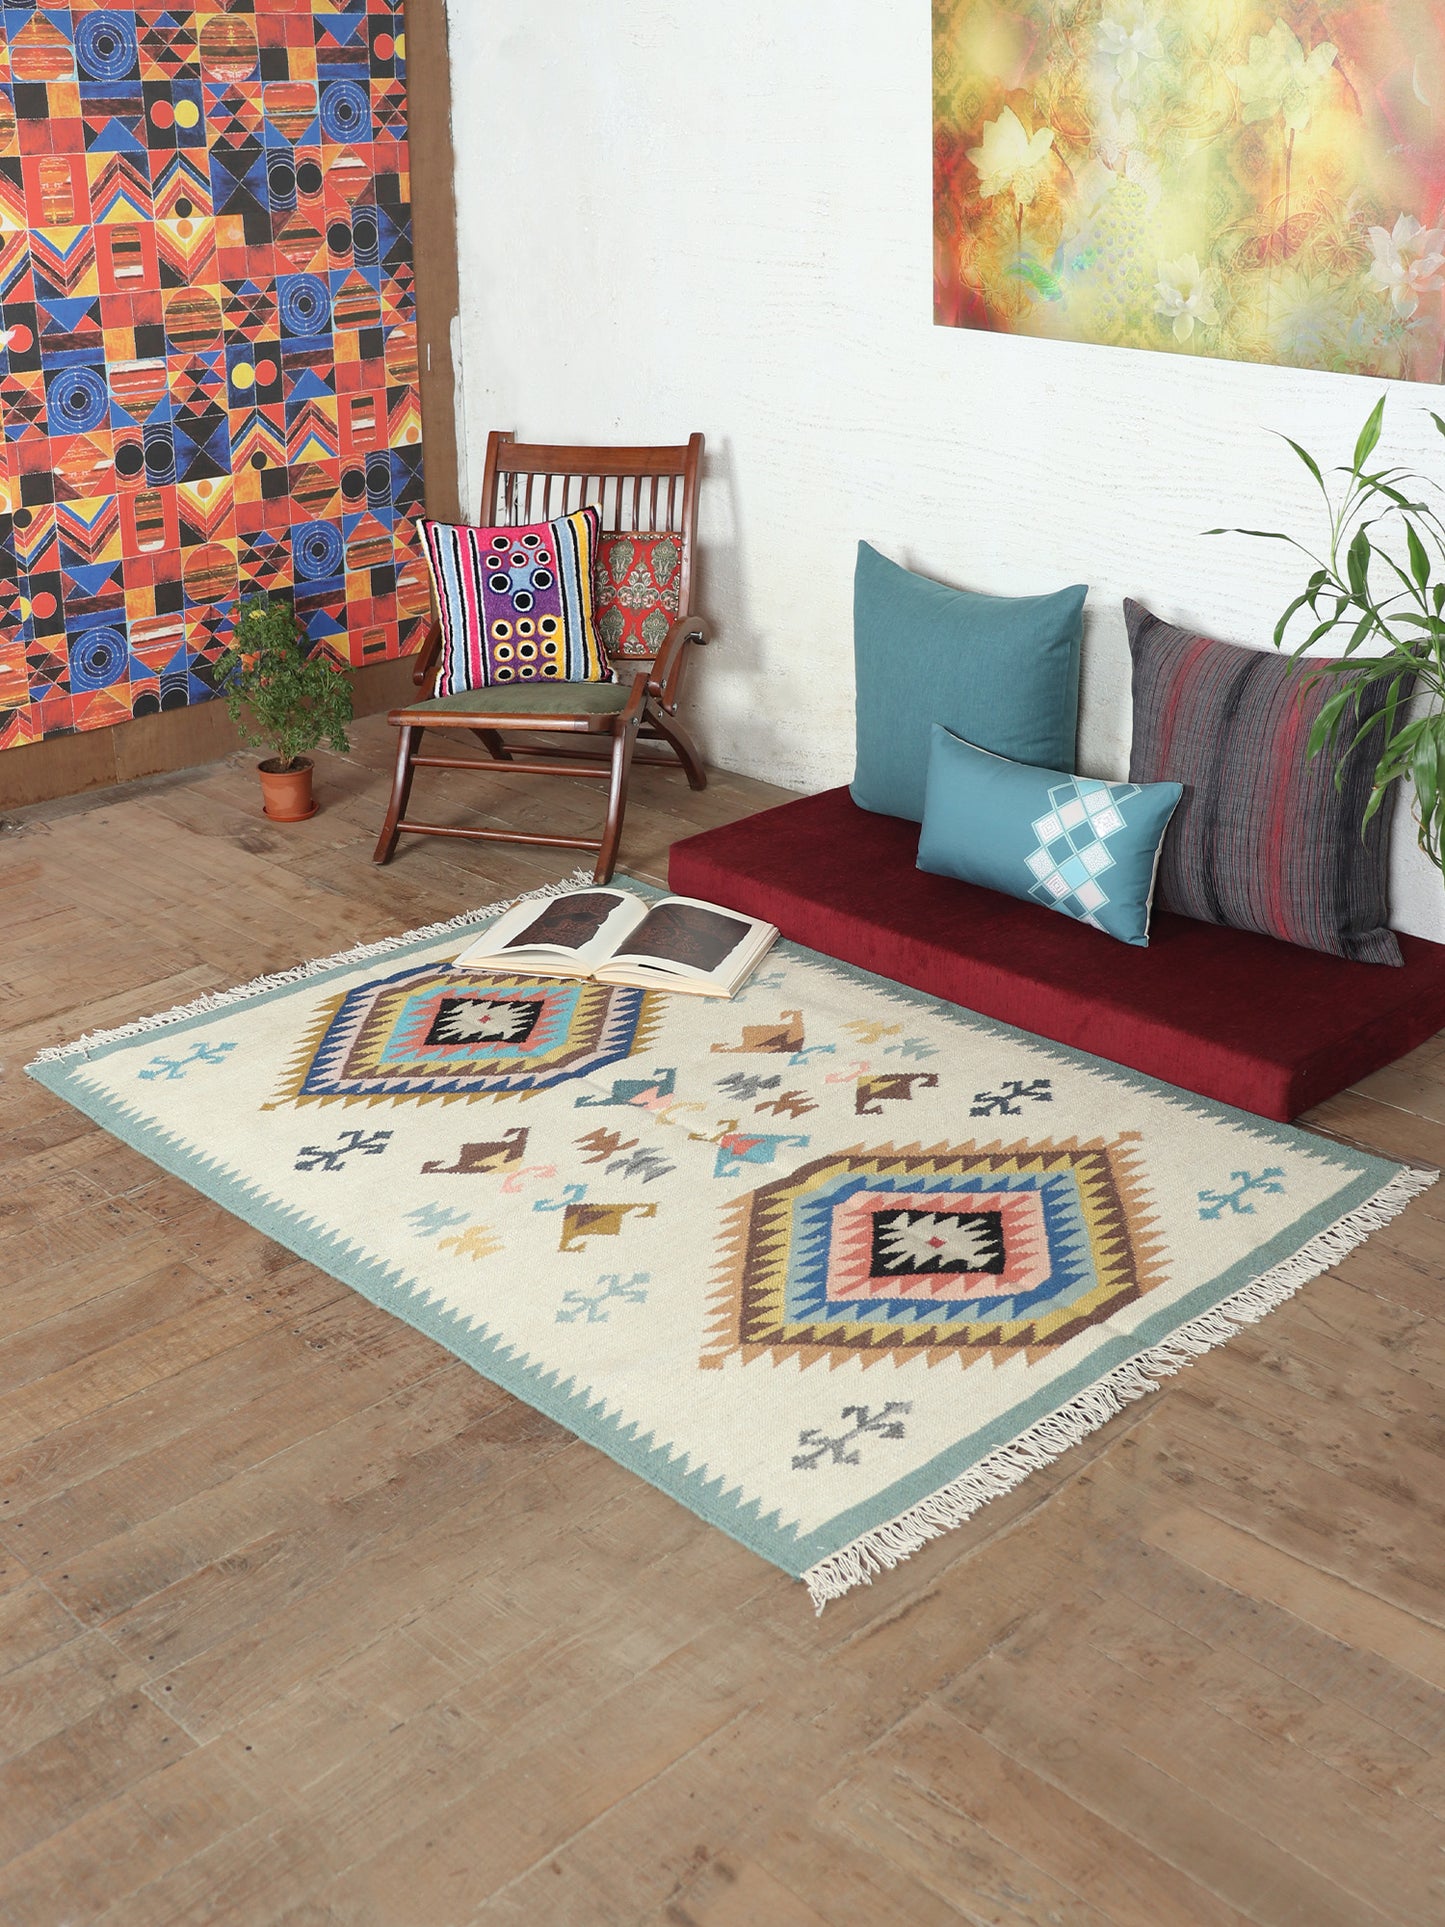 Dhurrie Handwoven Wollen for Floor, Living Room & Bedroom | Multicolor - 3x5 feet